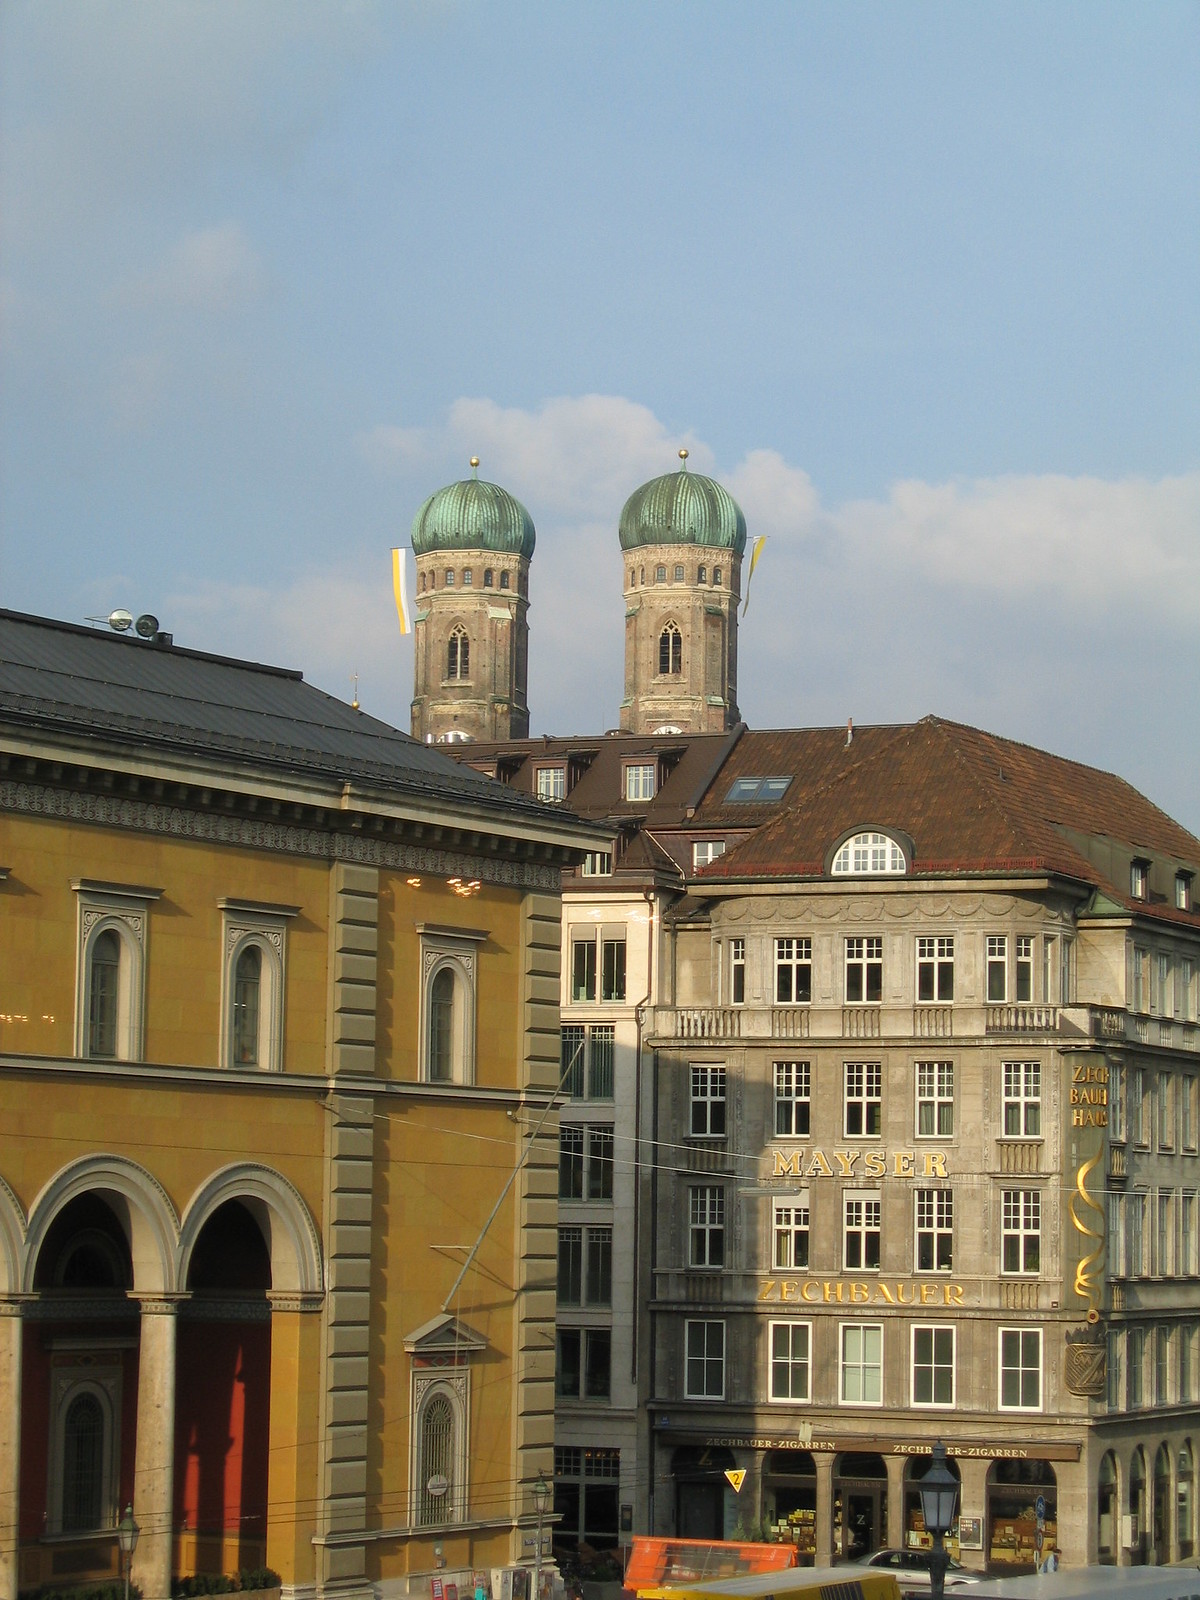 5 Frauenkirche views from Munich Opera